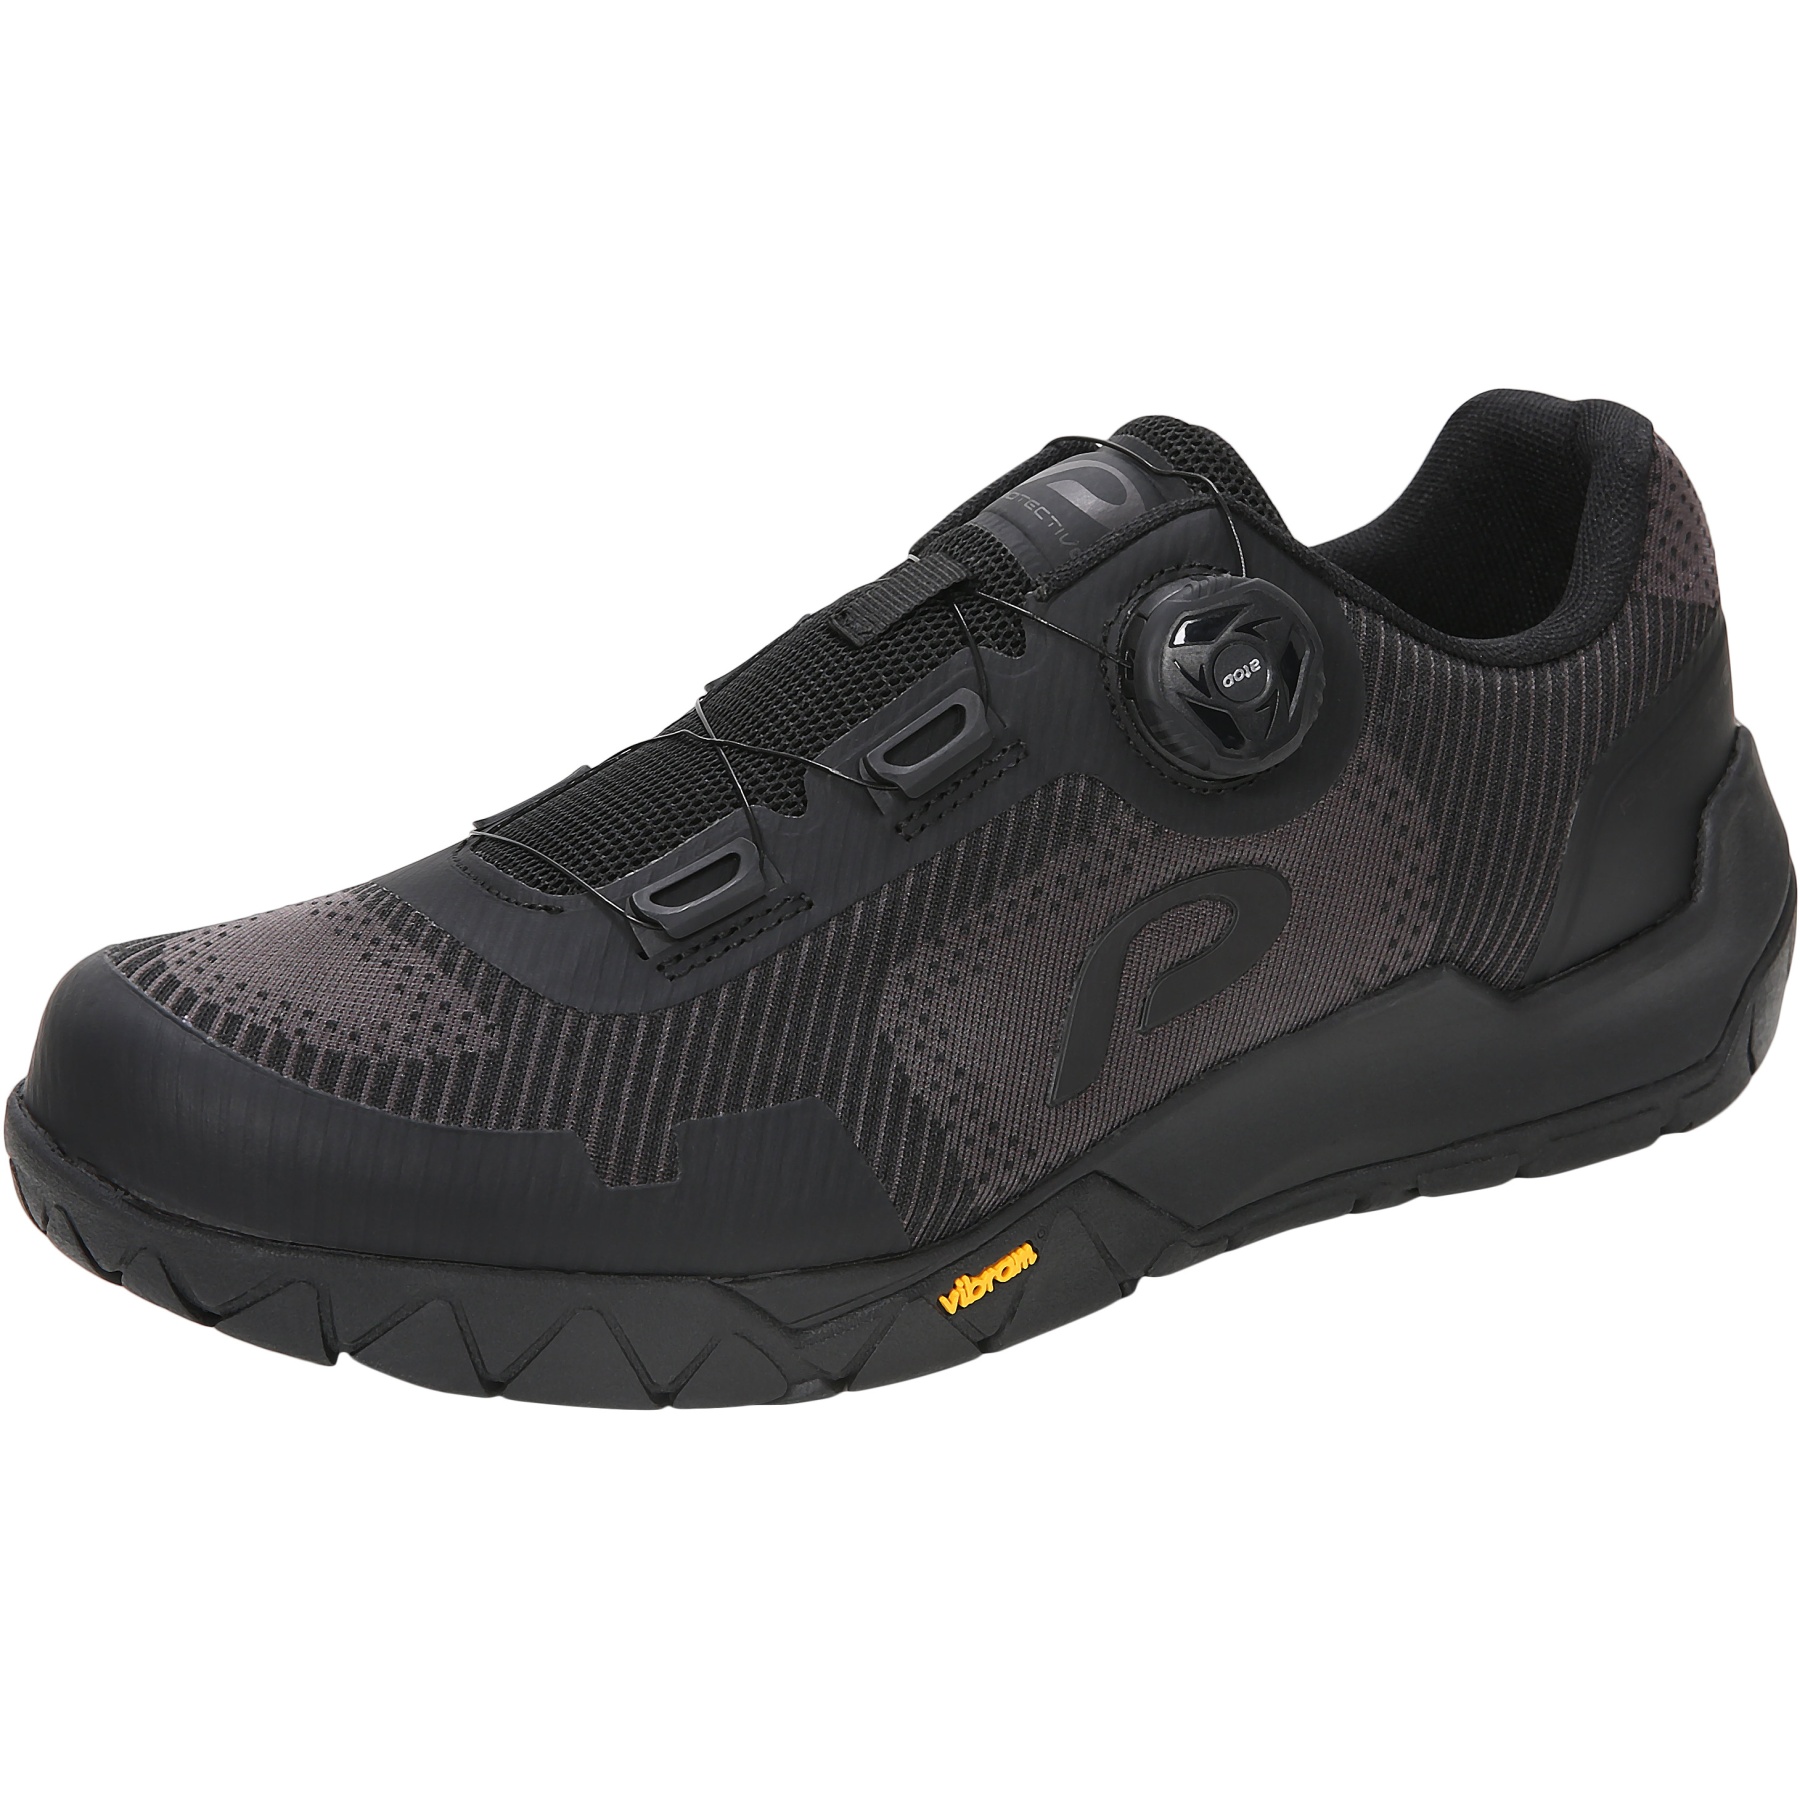 Produktbild von PROTECTIVE P-Bounce Unisex All Mountain Schuhe - schwarz